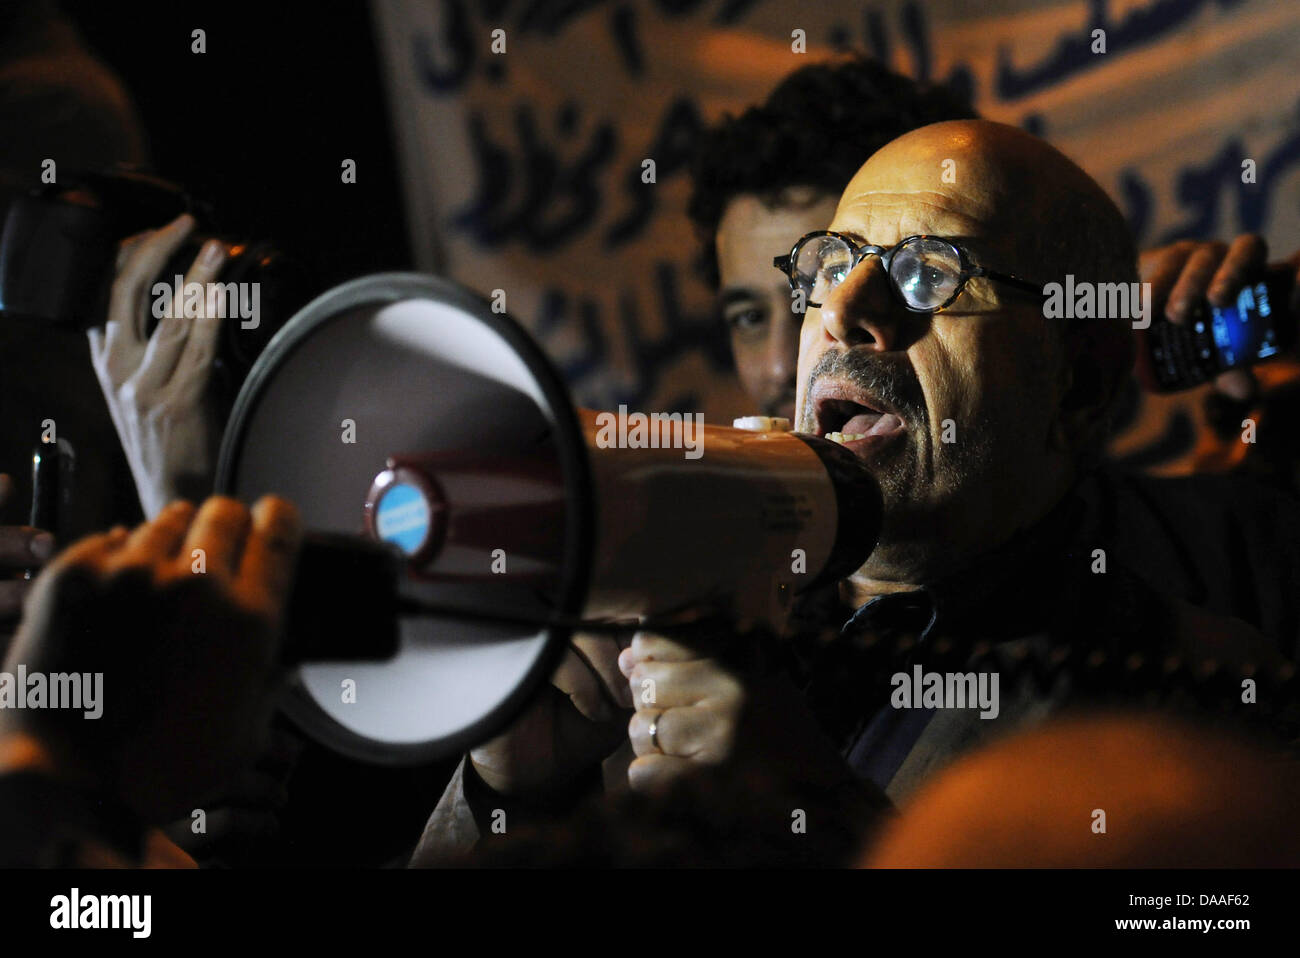 Lauréat du Prix Nobel de la paix égyptien et possible candidat à la présidence Mohamed ElBaradei parle aux manifestants à la place Tahrir au Caire, Égypte, 30 janvier 2011. Manifestations anti-gouvernementales en Egypte continuent. Photo : HANNIBAL HANSCHKE Banque D'Images